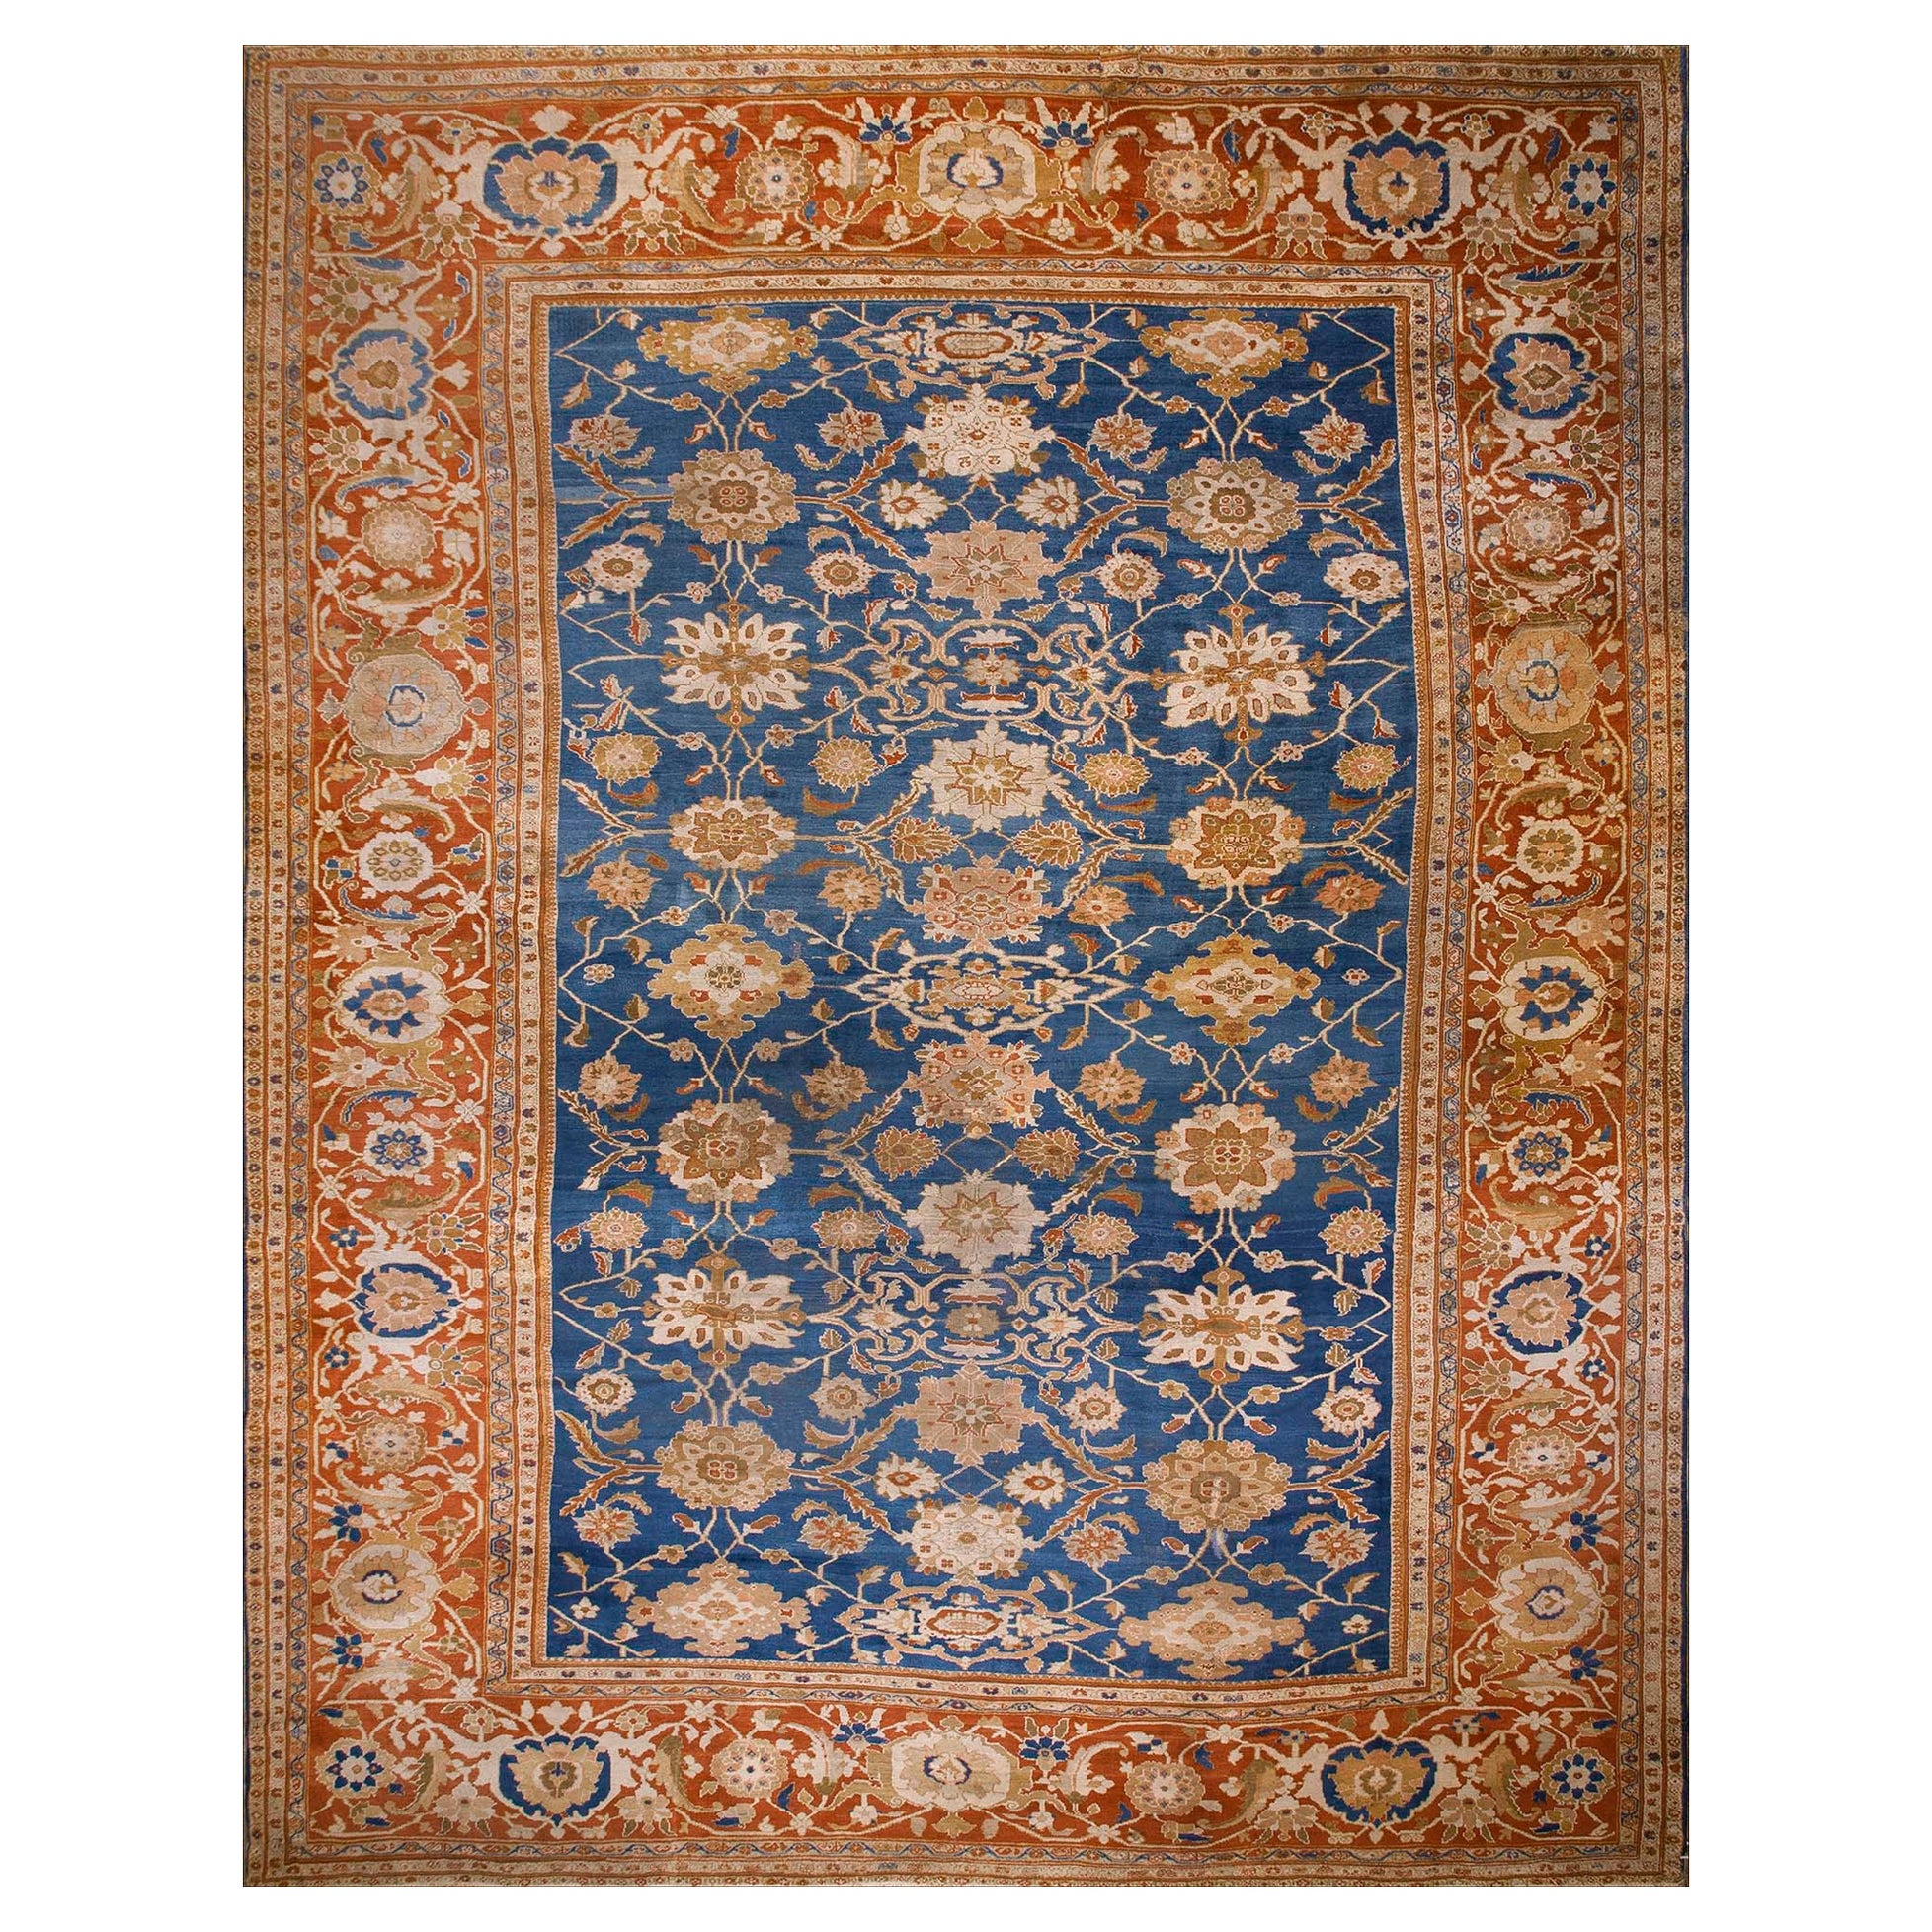 Persischer Ziegler Sultanabad-Teppich des 19. Jahrhunderts ( 13'9" x 17'10" - 420 x 545")